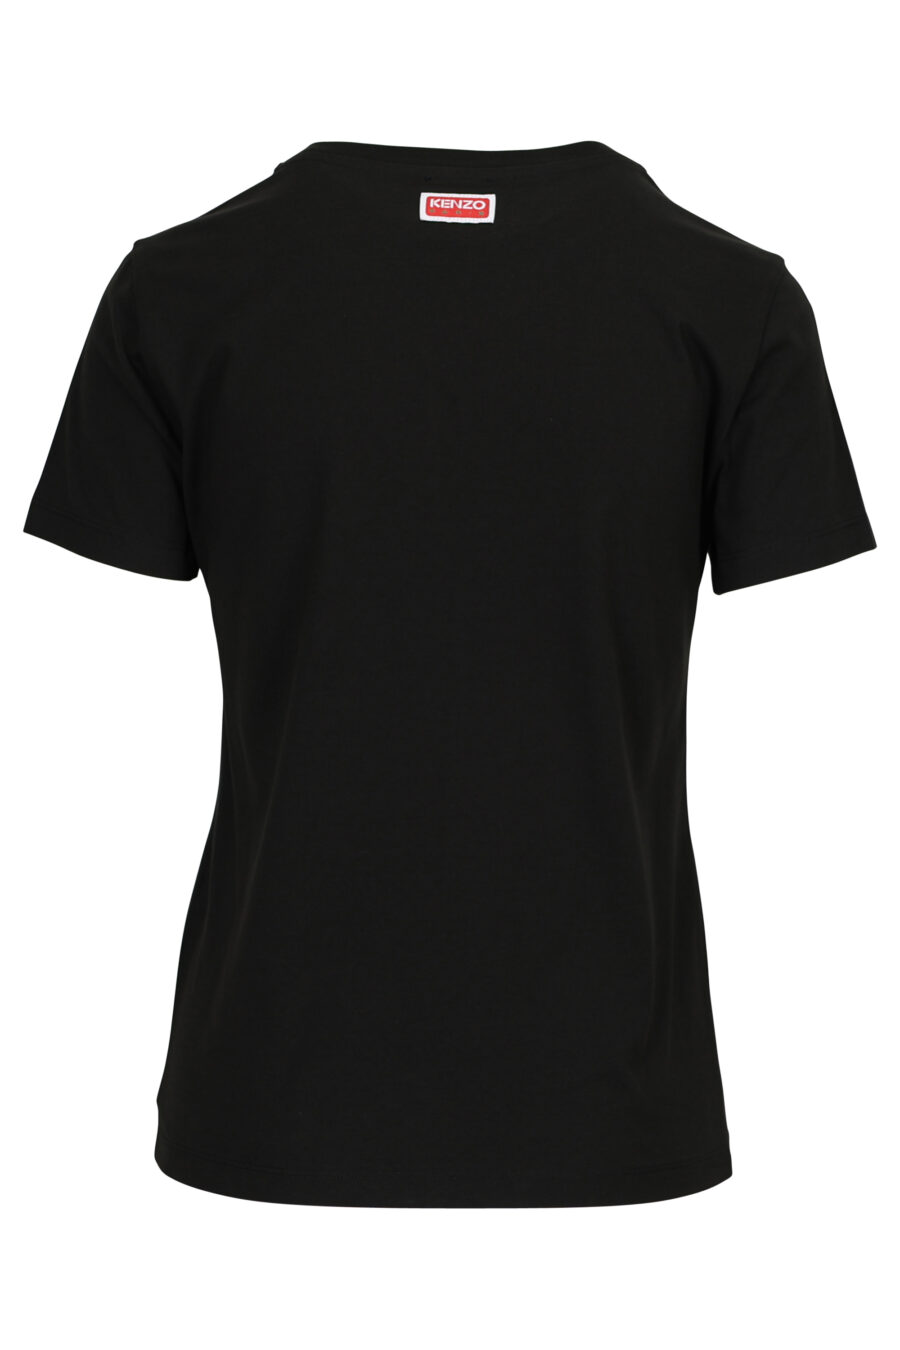 T-shirt schwarz mit Minilogue "Tiger" - 3612230552319 1